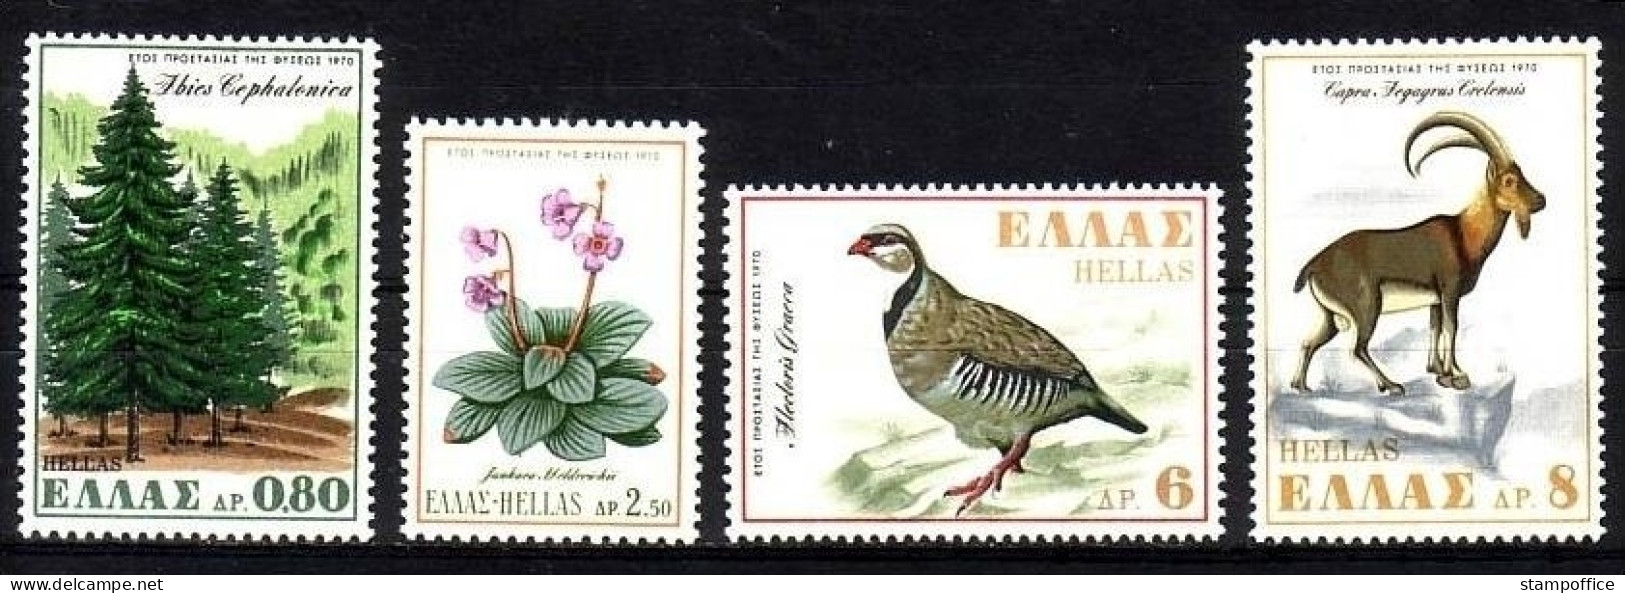 GRIECHENLAND MI-NR. 1049-1052 POSTFRISCH MITLÄUFER 1970 NATURSCHUTZJAHR TANNE STEINHUHN WILDZIEGE - Unused Stamps